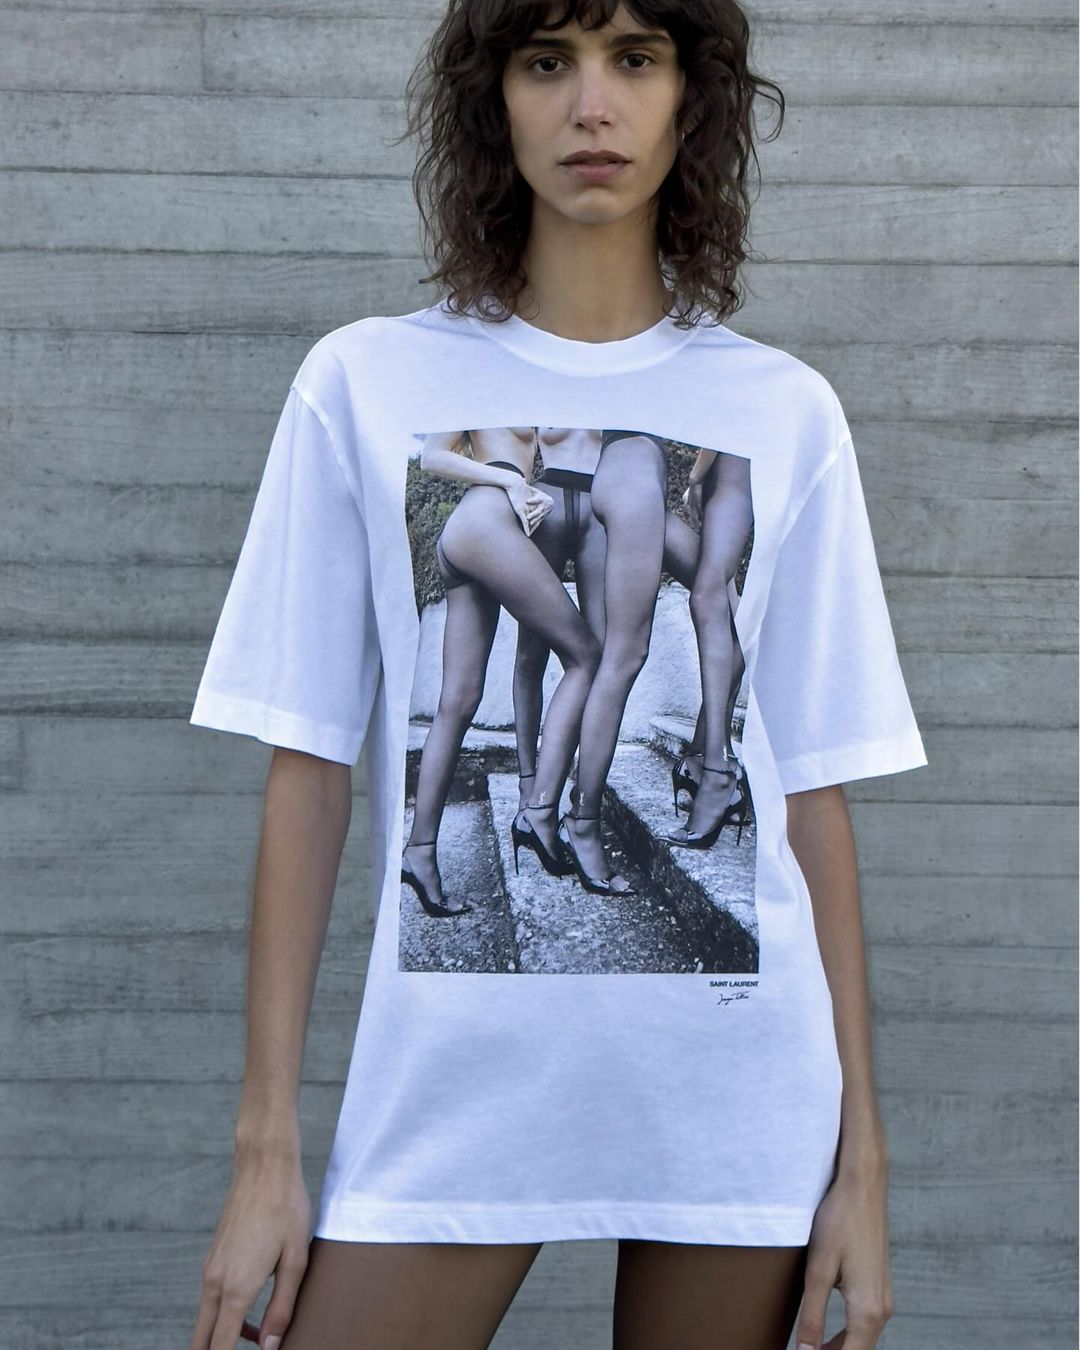 Saint Laurent lança coleção em homenagem ao fotógrafo de moda Juergen Teller